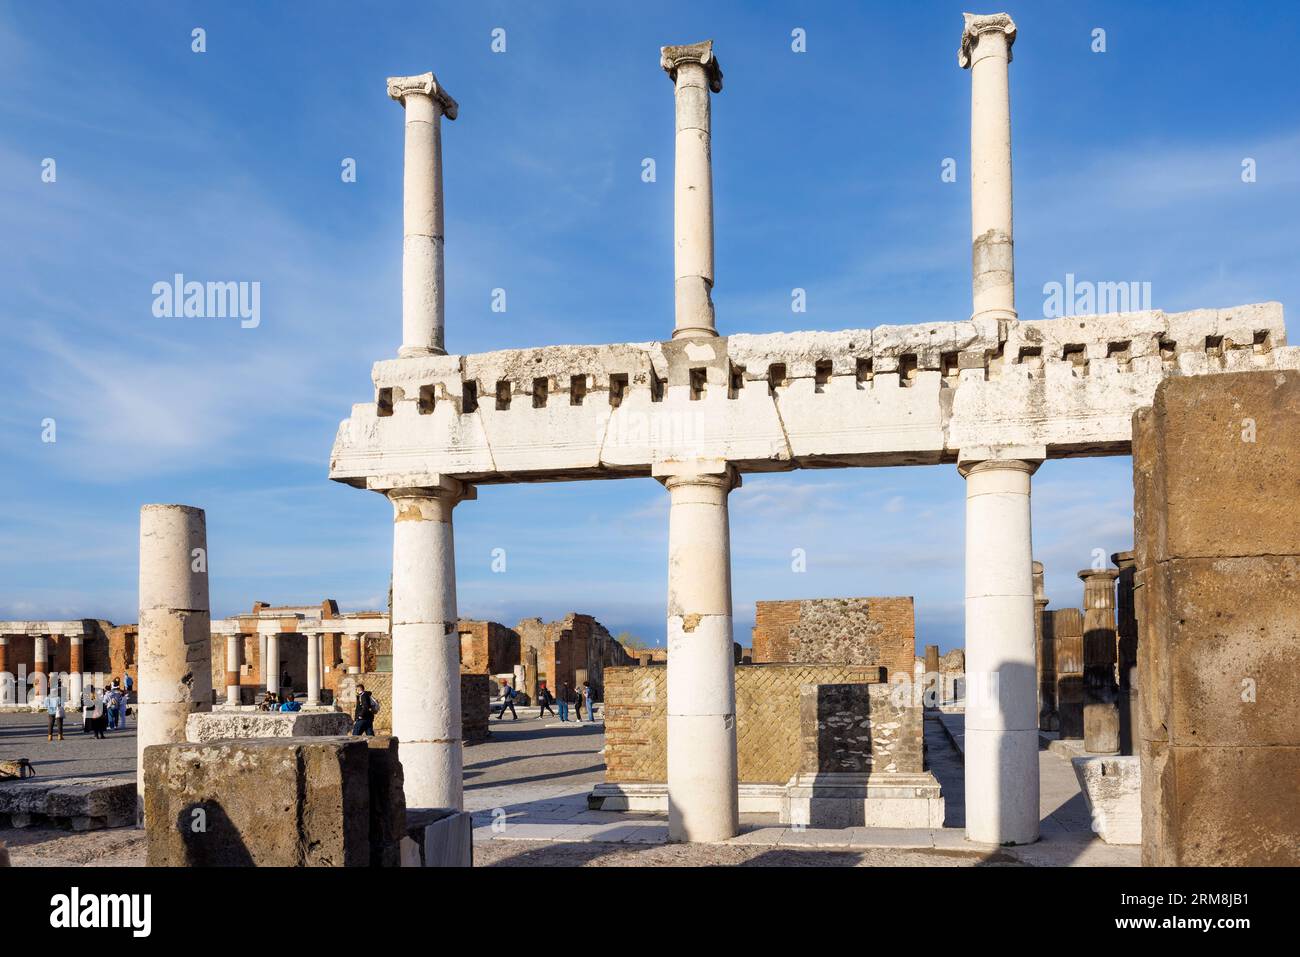 Archäologische Stätte Pompeji, Kampanien, Italien. Das Forum. Pompeji, Herculaneum und Torre Annunziata werden gemeinsam zum UNESCO-Weltherit erklärt Stockfoto